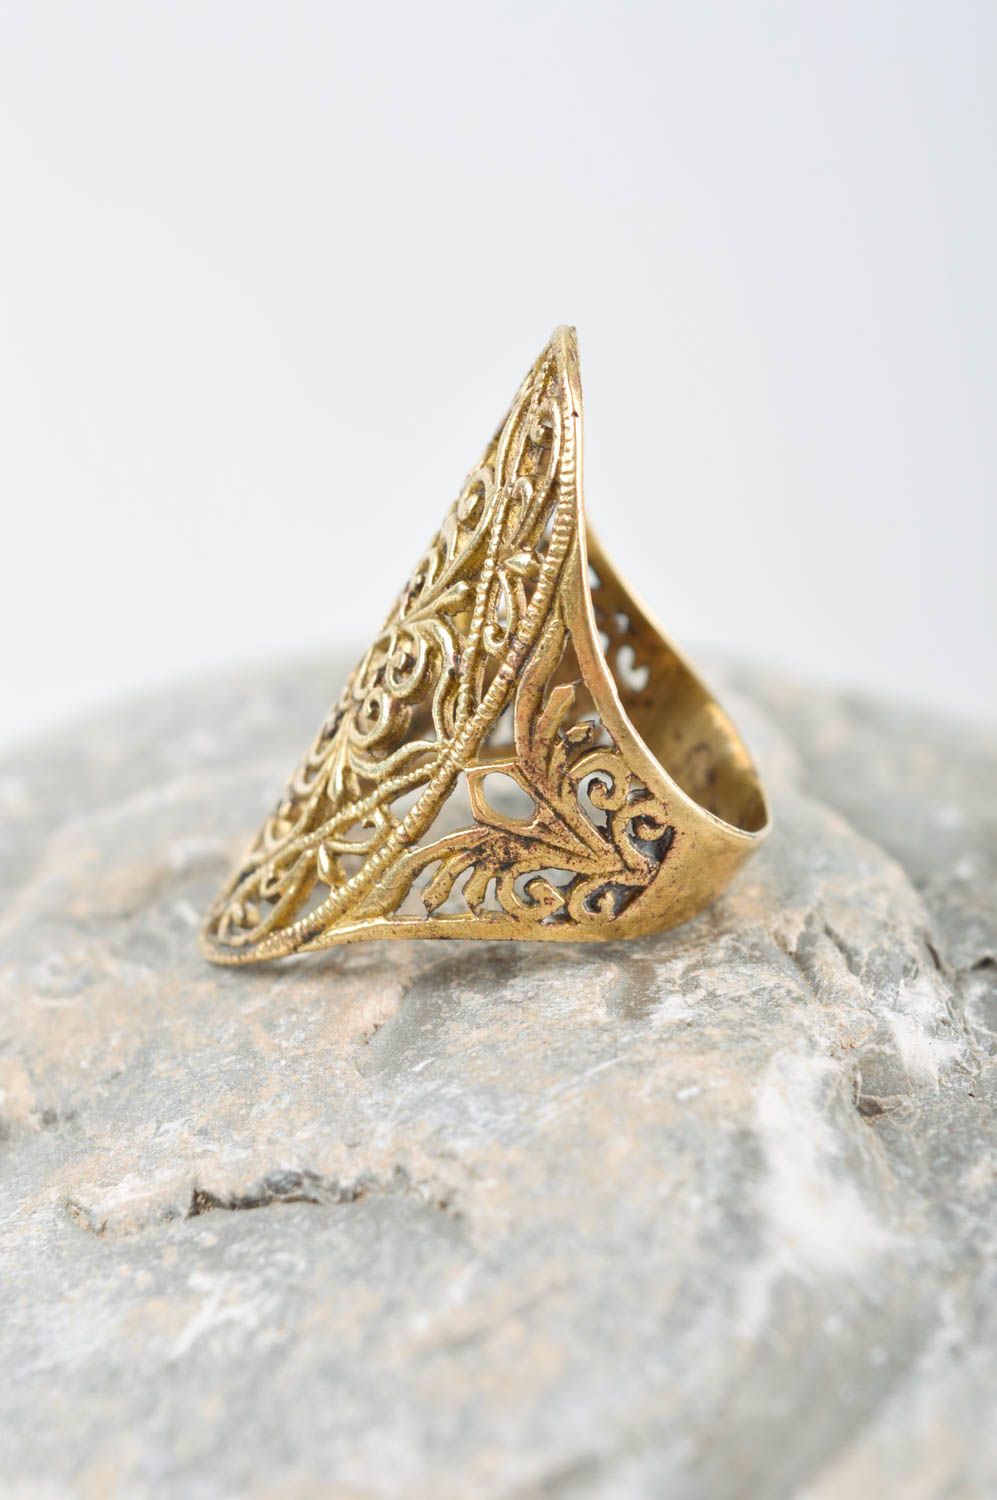 Резное украшение ручной работы изящное женское кольцо украшение из металла фото 1